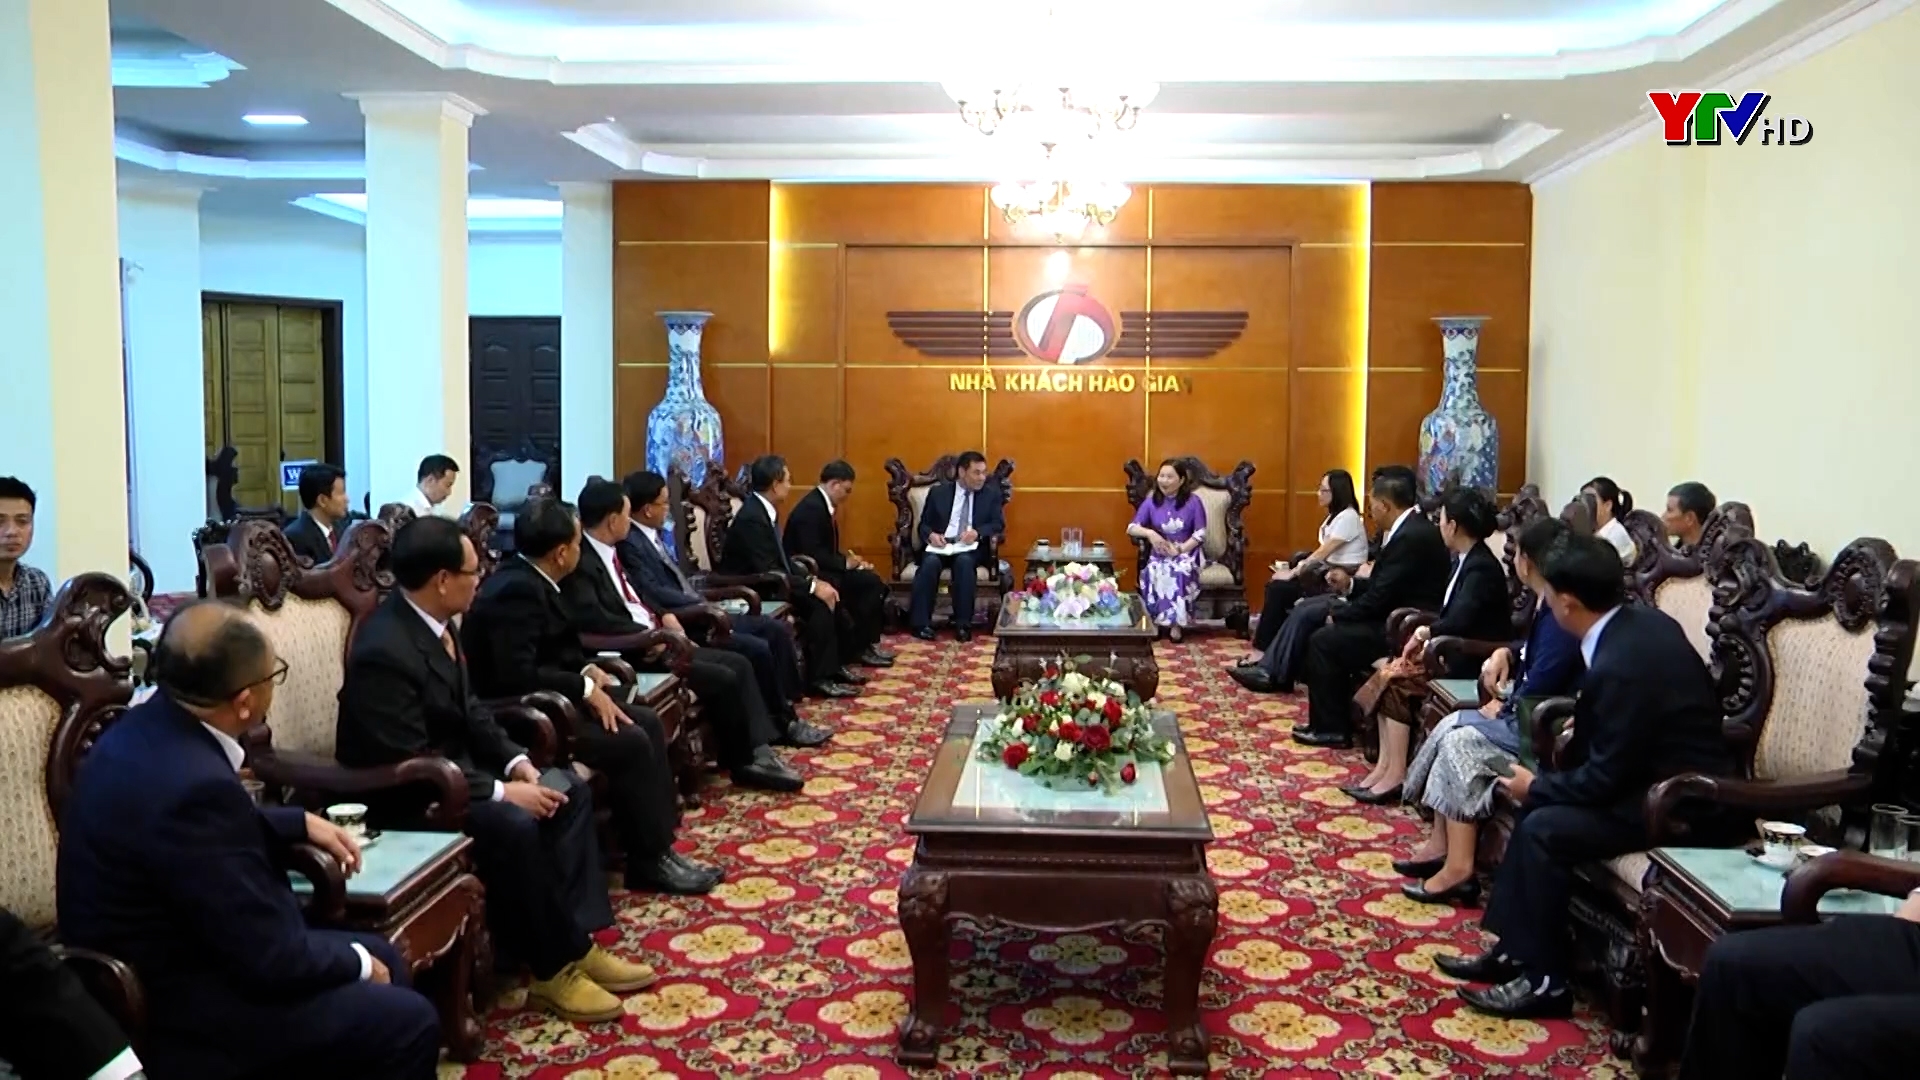 Đồng chí Phó Chủ tịch UBND tỉnh Vũ Thị Hiền Hạnh tiếp đoàn công tác của Sở Y tế tỉnh Viêng Chăn